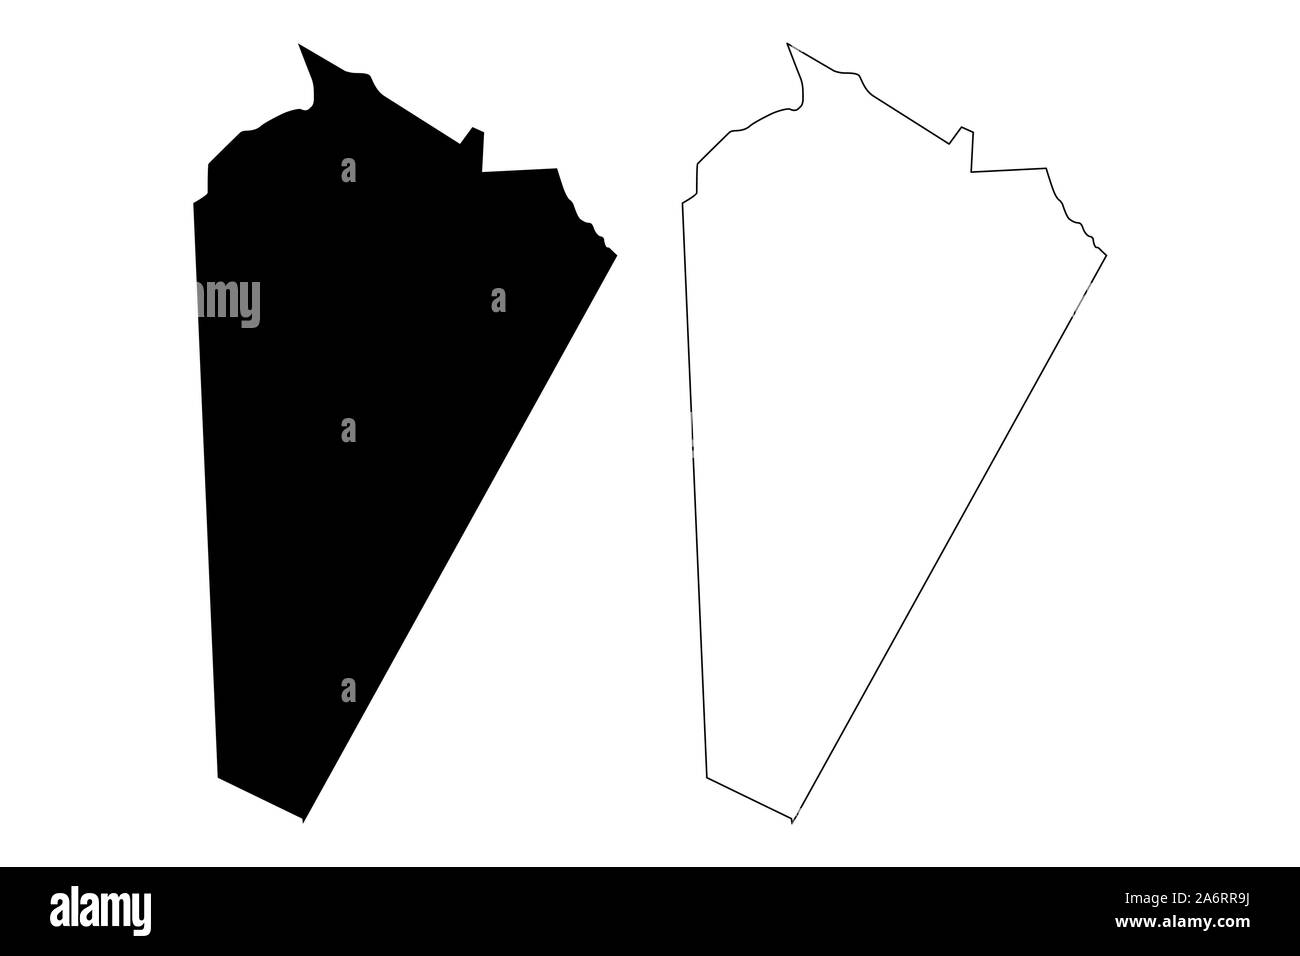 Ash Sharqiyah Governorate Nord (Sultanat Oman, Gouvernements von Oman) Karte Vektor-illustration, kritzeln Skizze der nordöstlichen Provinz Karte Stock Vektor